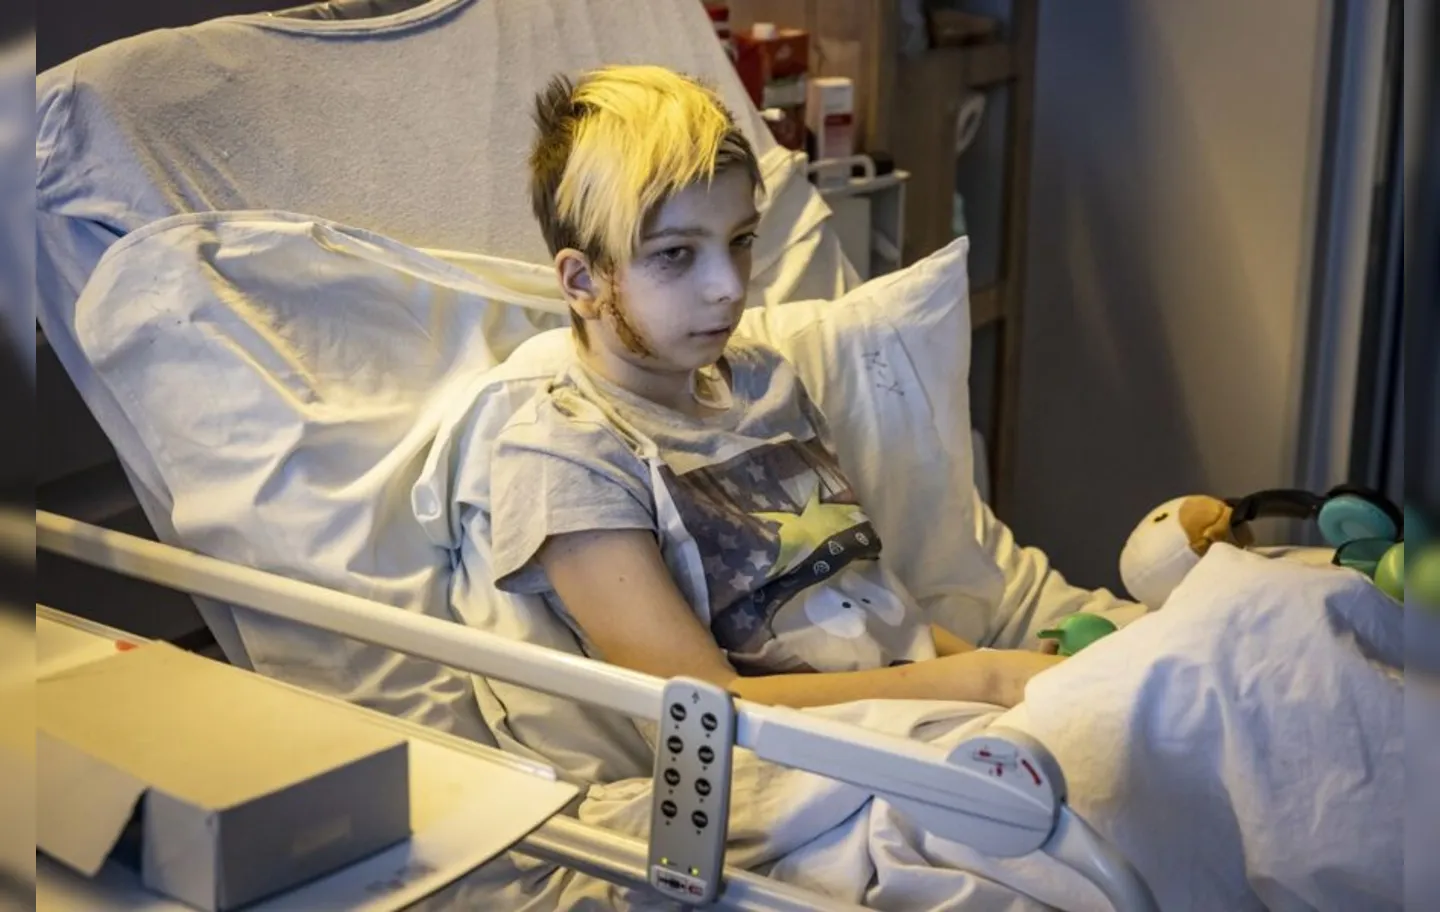 Volodymyr, de 13 anos, viajava com sua família, quando o carro foi alvejado por tiros